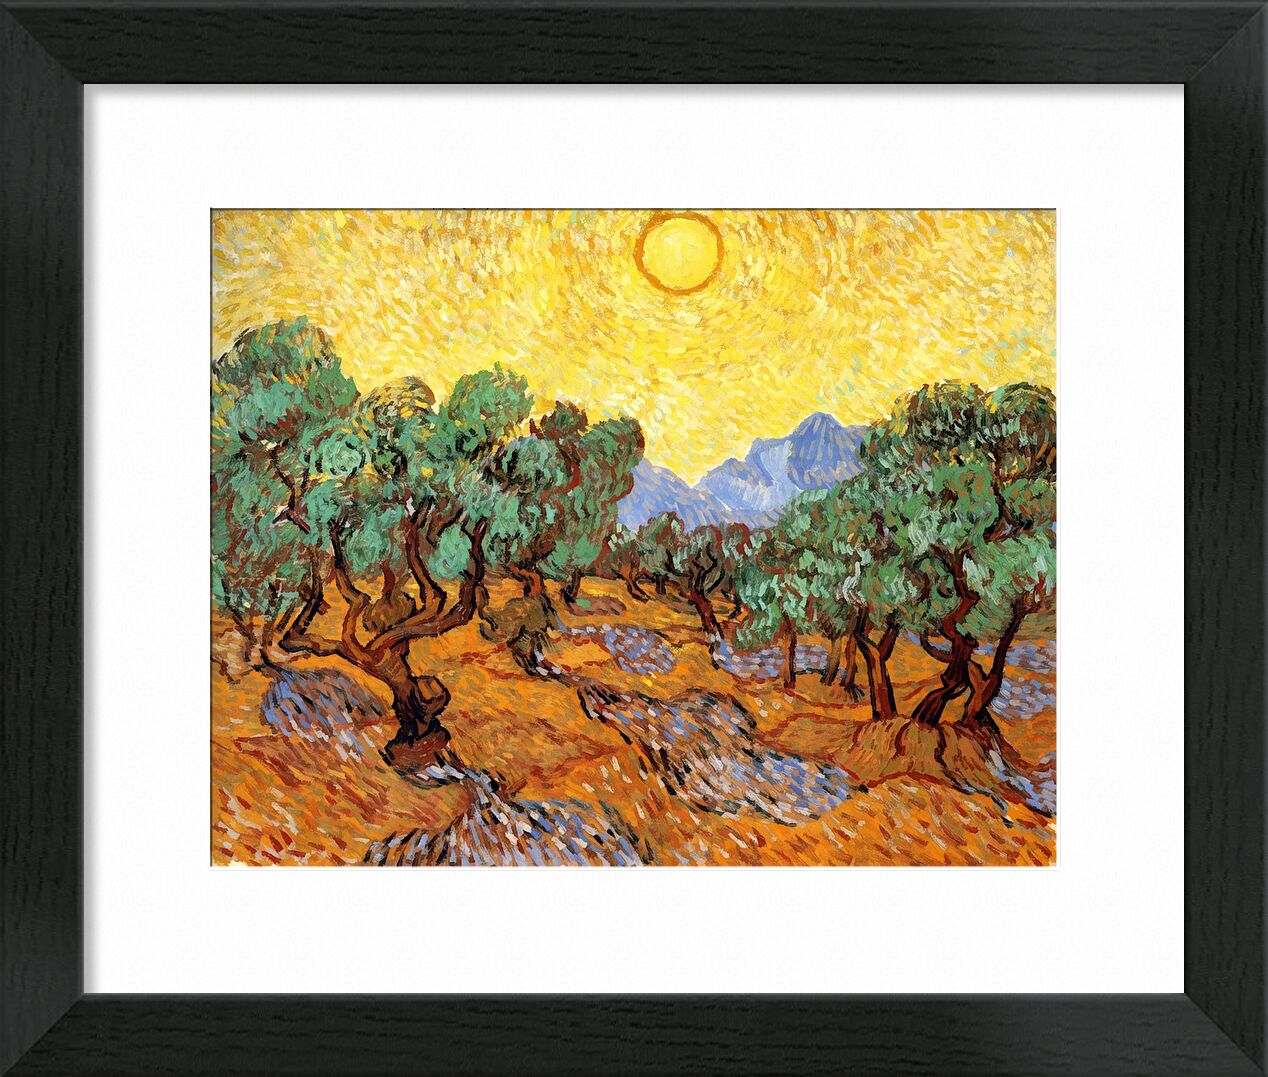 Sun over Olive Grove - Van Gogh desde Bellas artes, Prodi Art, surco de olivos, sol, paisaje, pintura, Van gogh